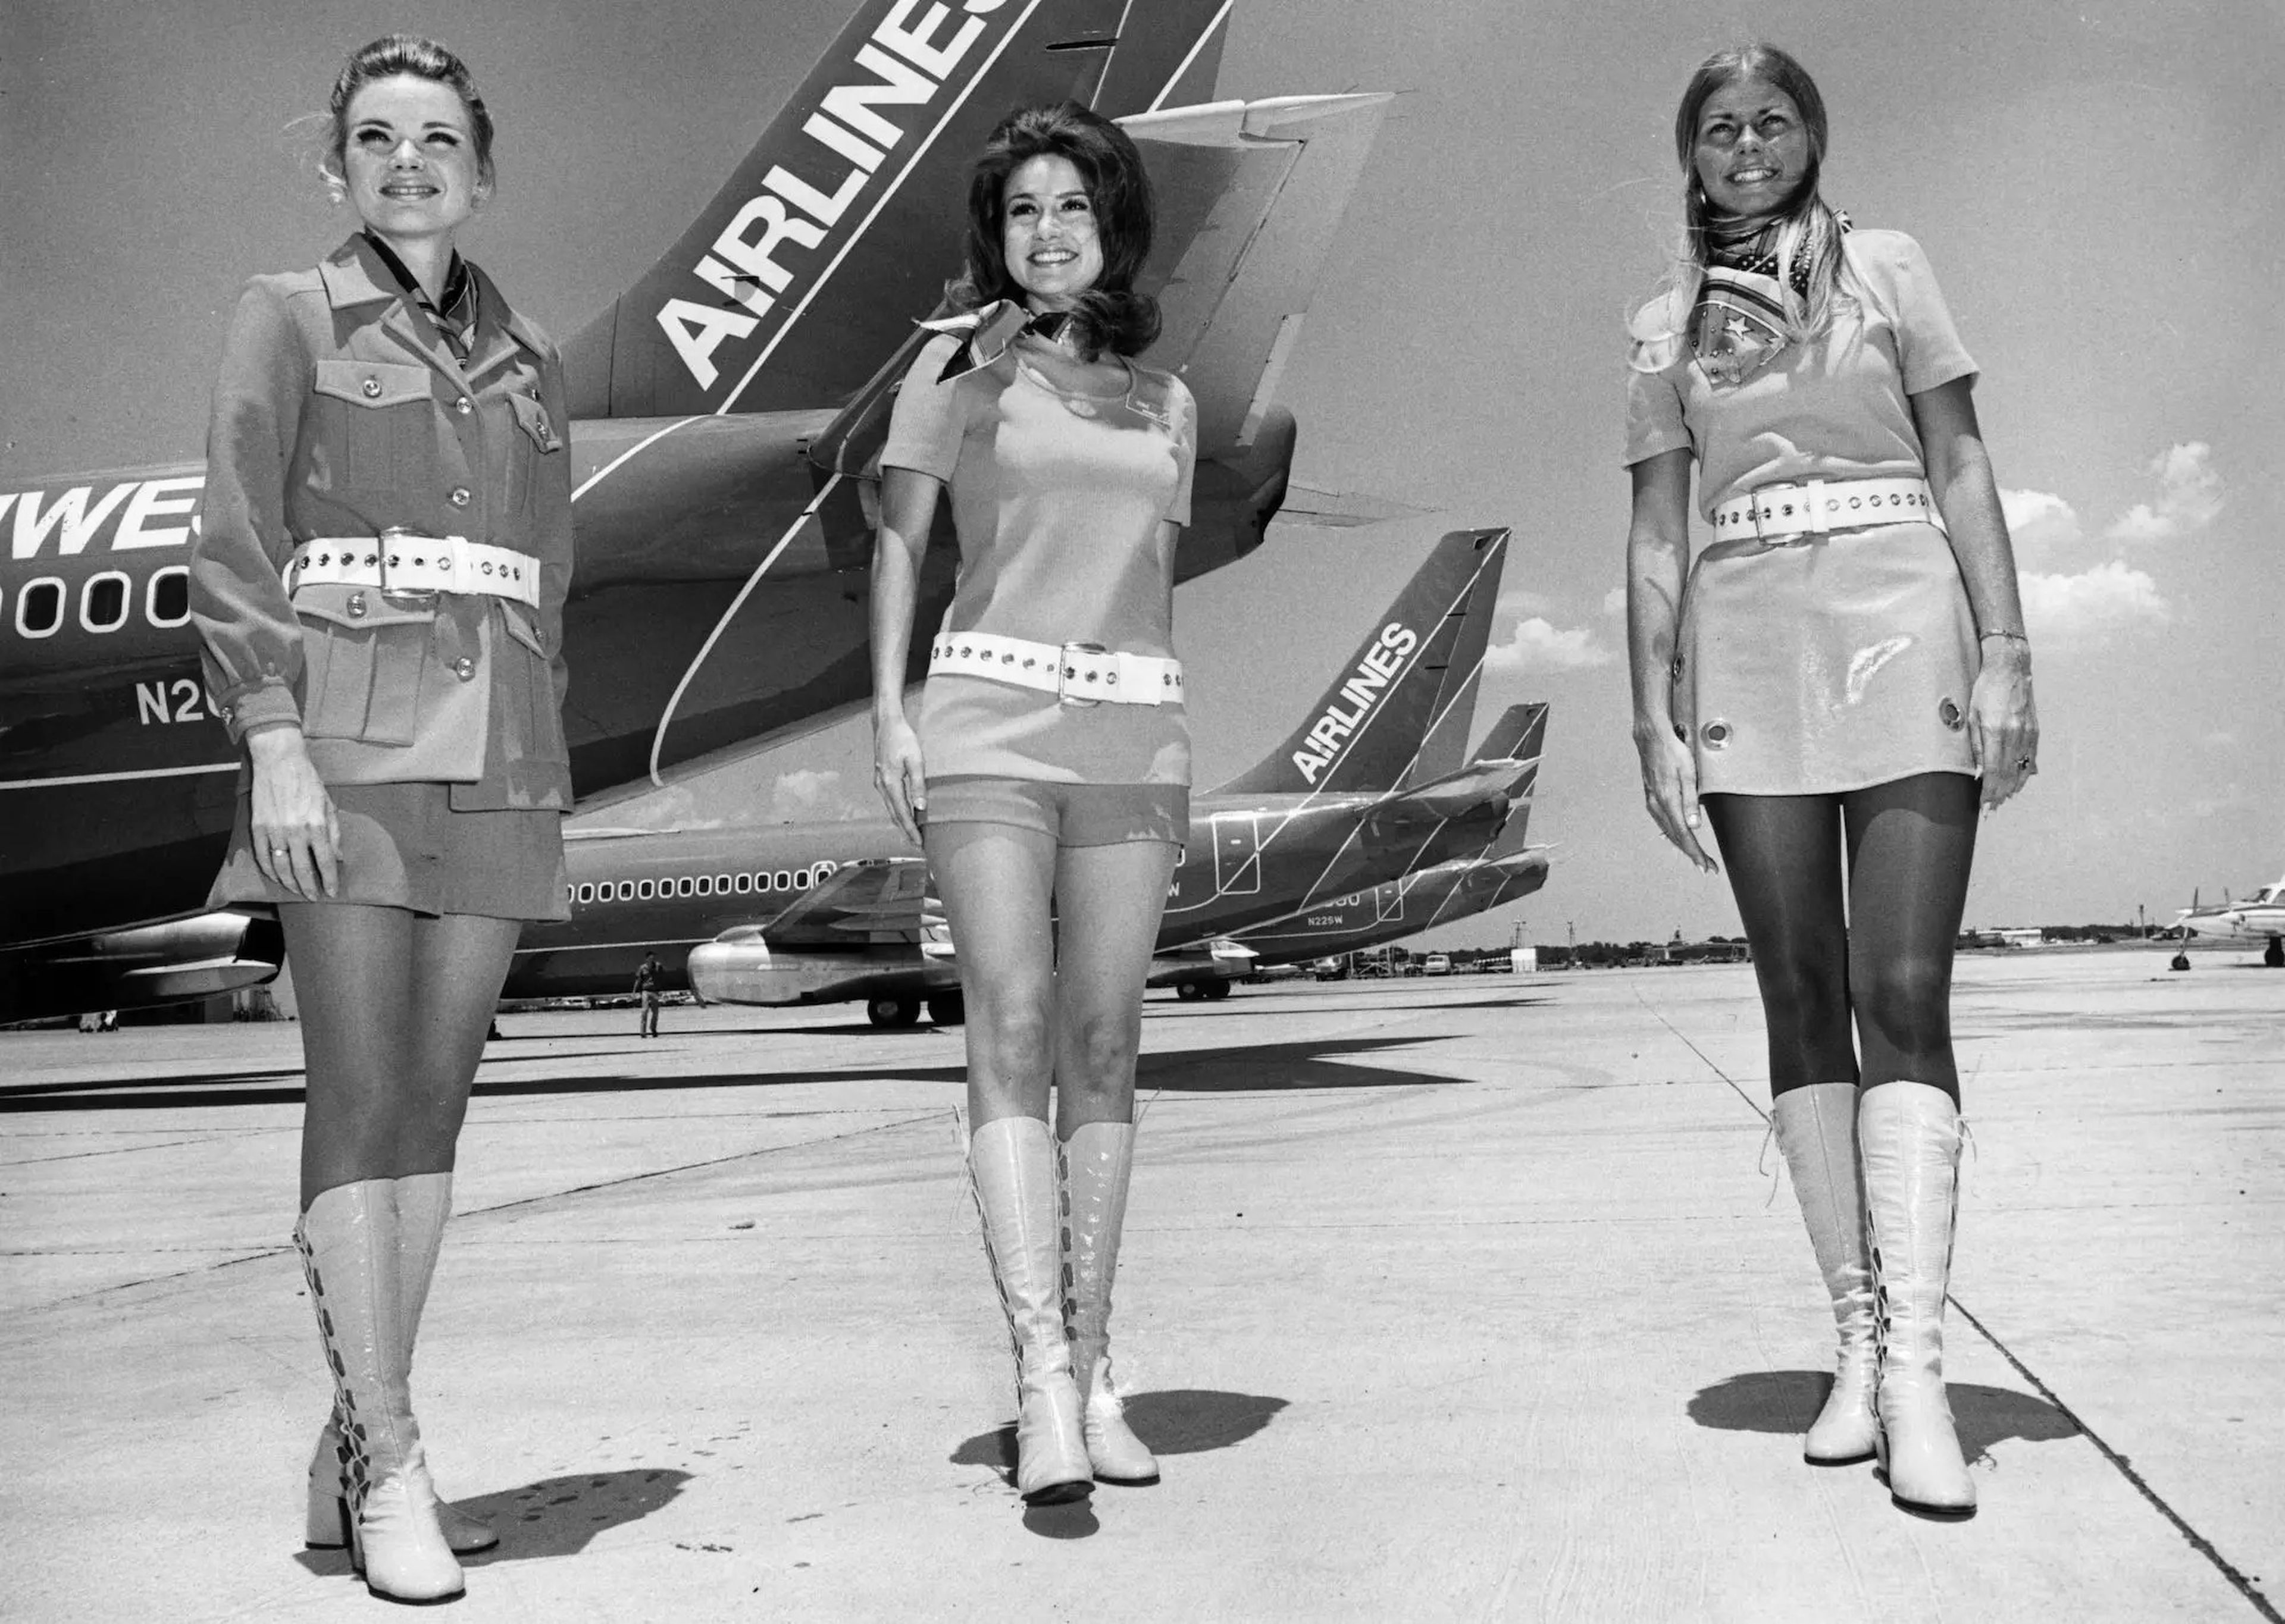 Foto de 1968 de tres auxiliares de vuelo de Southwest Airlines.